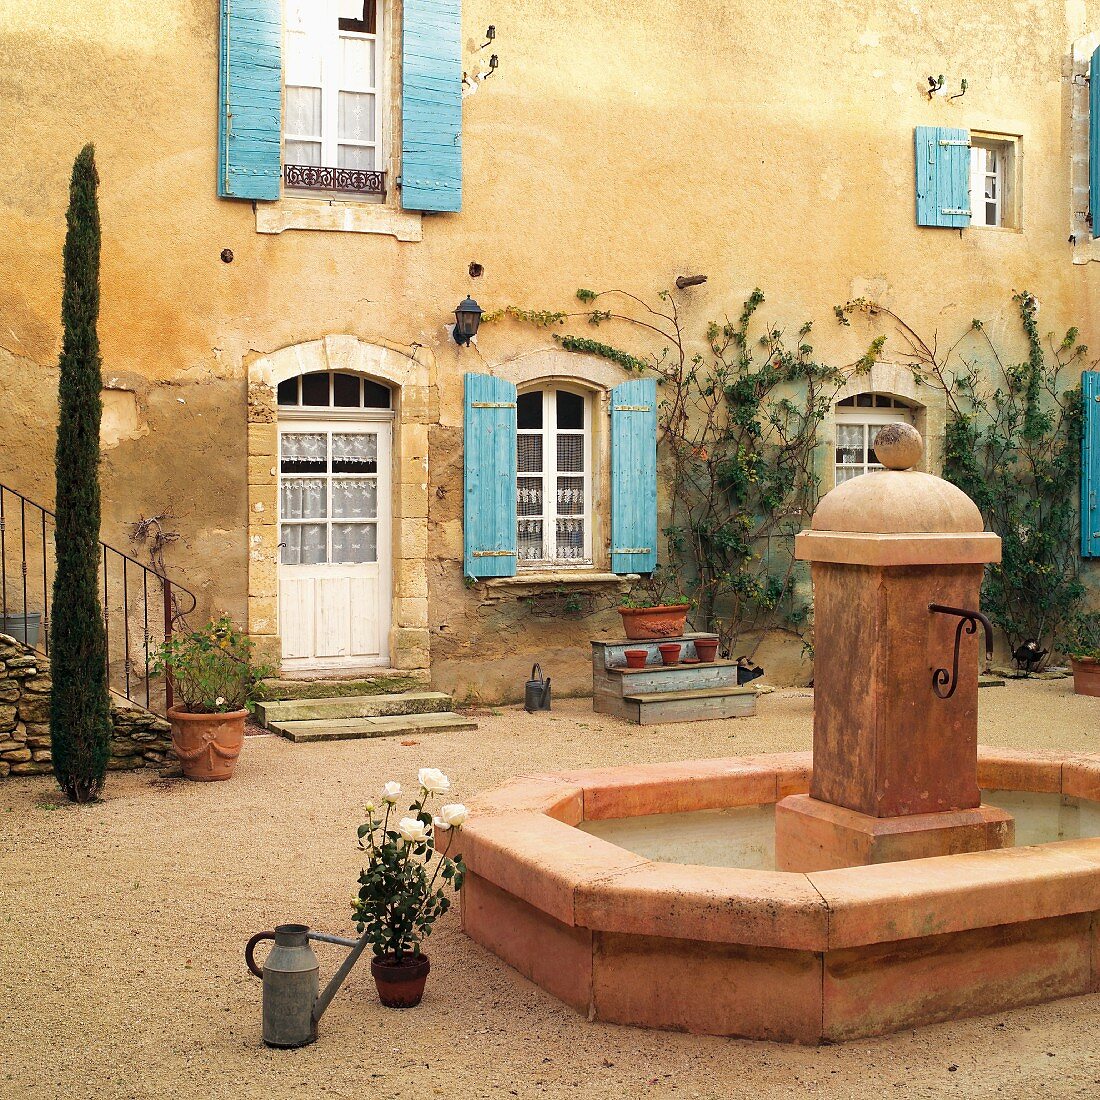 Brunnen im Innenhof eines französischen Landhauses mit türkisblauen Fensterläden an verwitterter Fassade